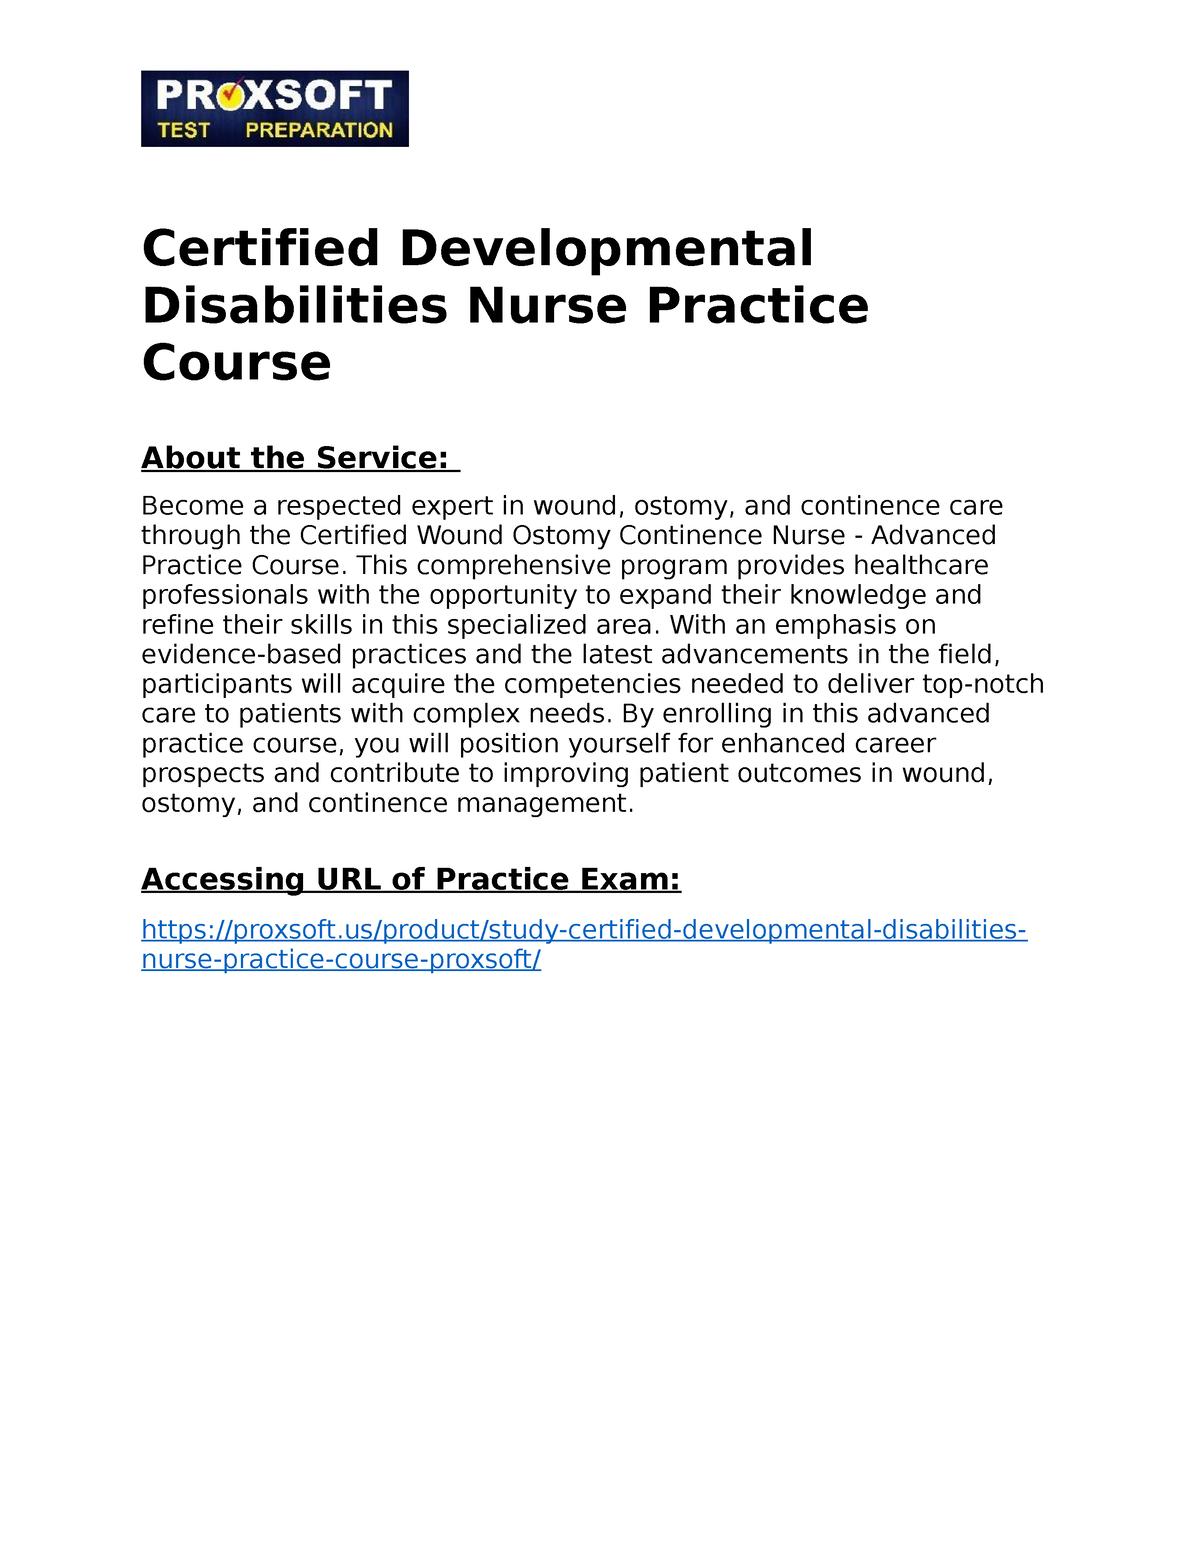 Certified Developmental Disabilities Nurse Practice Course Certified